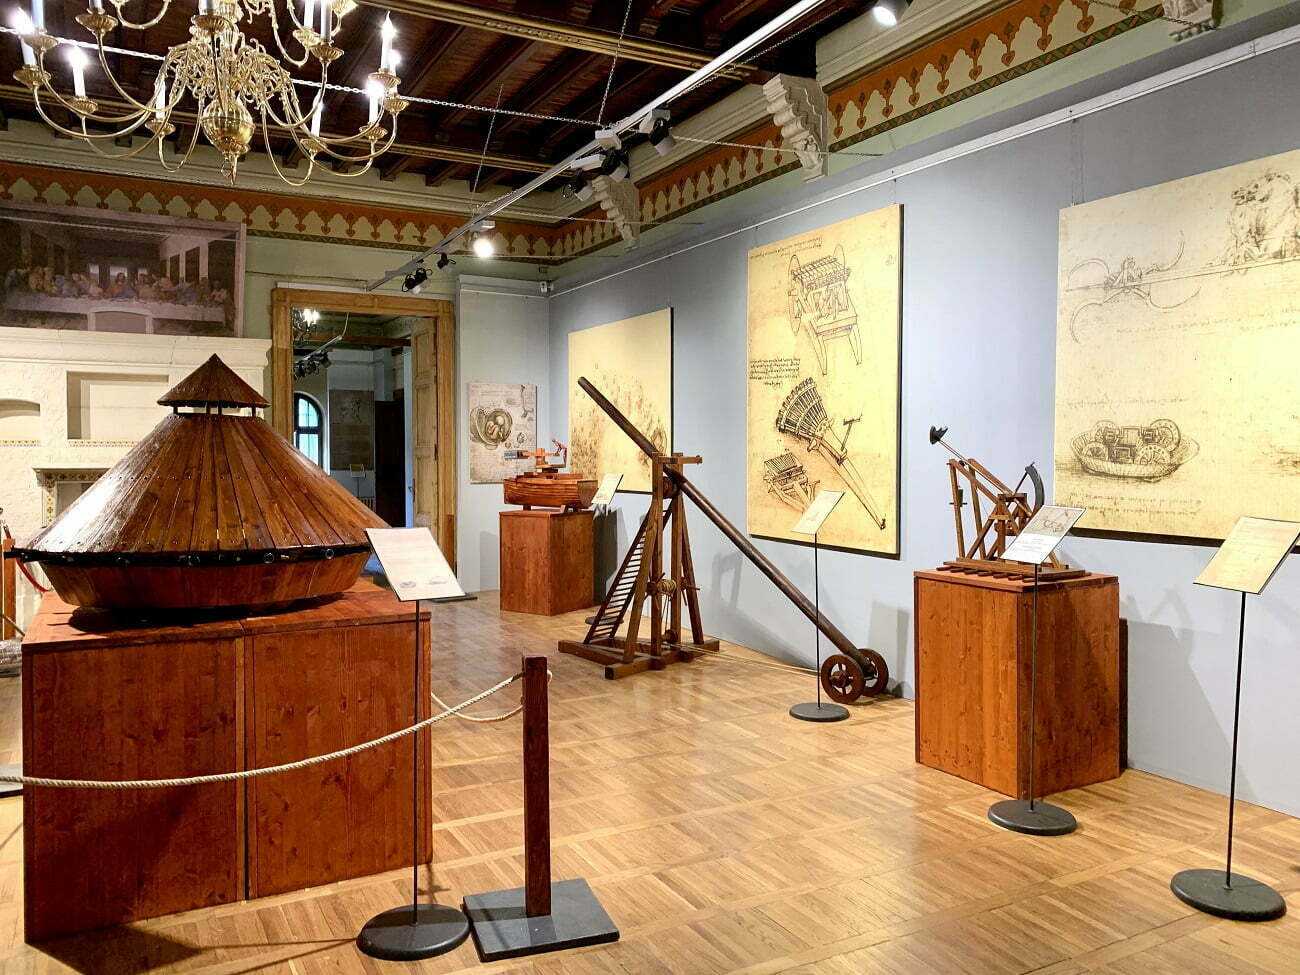 Leonardo da Vinci – omul vizionar și creațiile sale tehnice, în expoziție la Castelul Cantacuzino din Bușteni